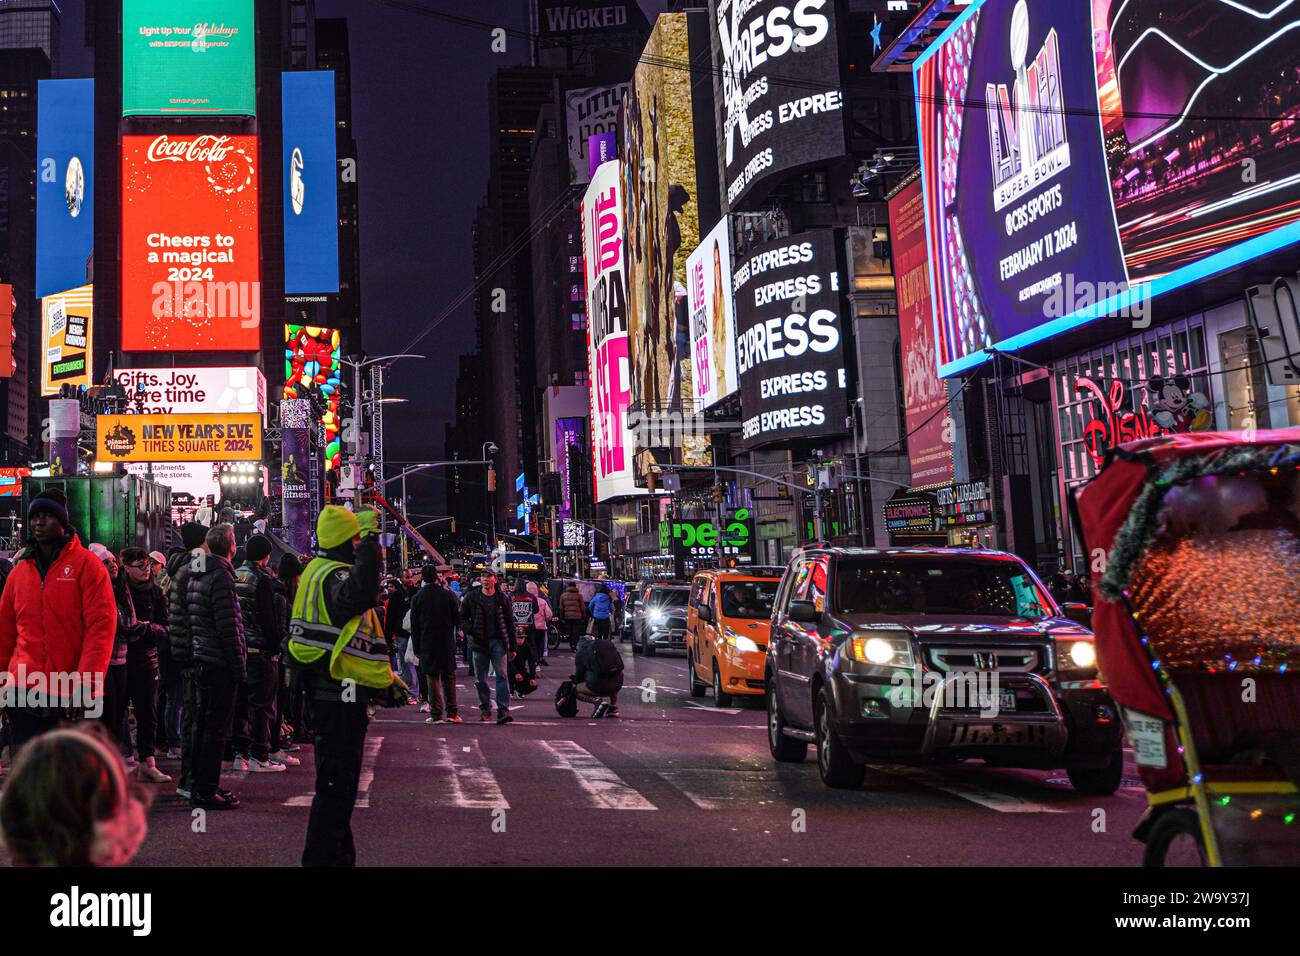 Die Leute laufen auf den Straßen am Times Square und blockieren die Autos. Der Straßenverkehr in New York City ist berühmt für seine geschäftige, temporeiche und oft überfüllte Natur. Das komplizierte Netz von Straßen und Straßen beherbergt ein riesiges Netz von Fahrzeugen, darunter Autos, Taxis, Busse und Fahrräder. alle navigieren in einem Meer von Fußgängern. Tägliche Staus während der Hauptverkehrszeiten sind alltäglich, besonders in der Nähe wichtiger Durchgangsstraßen und Brücken, was zu längeren Pendlerzeiten und gelegentlicher Frustration für Einwohner und Besucher gleichermaßen führt. Stockfoto